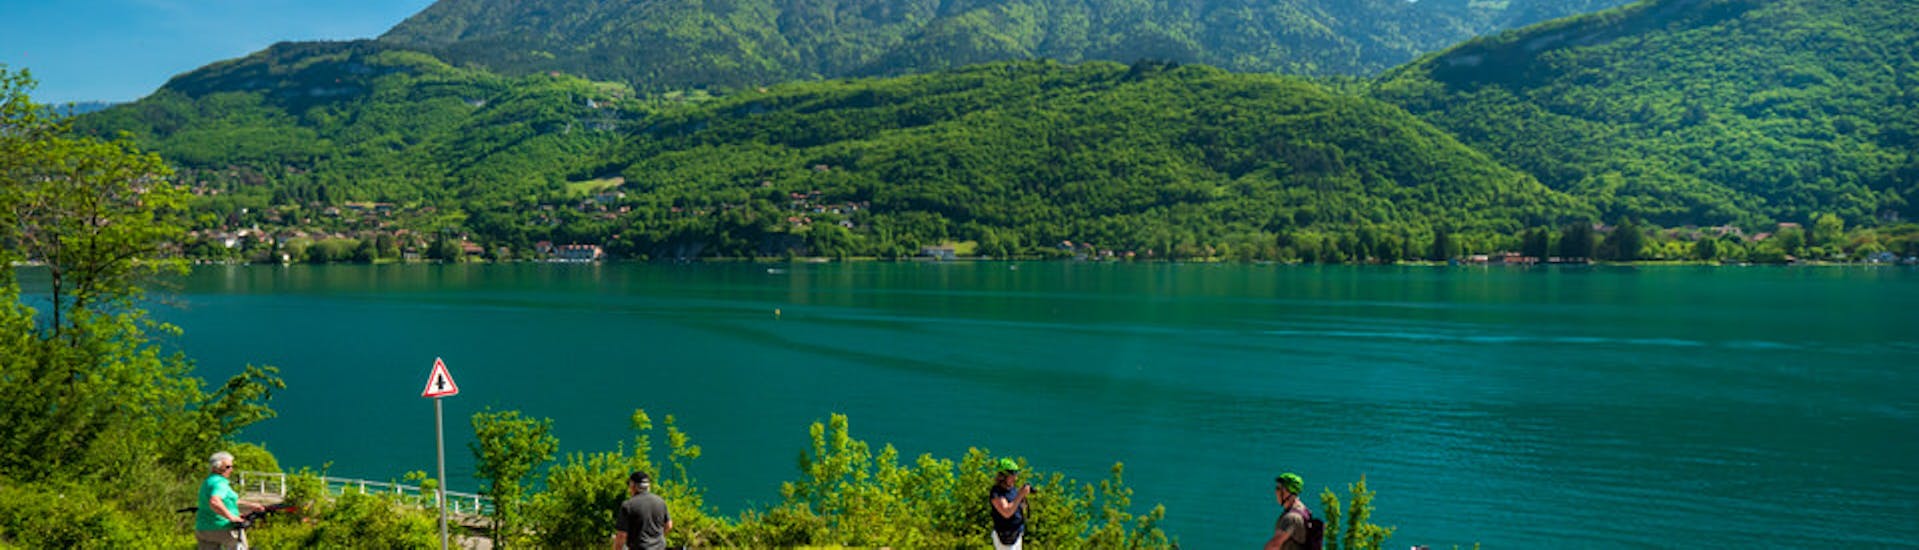 Vista del paisaje durante el alquiler de bicicletas híbridas en el lago de Annecy.